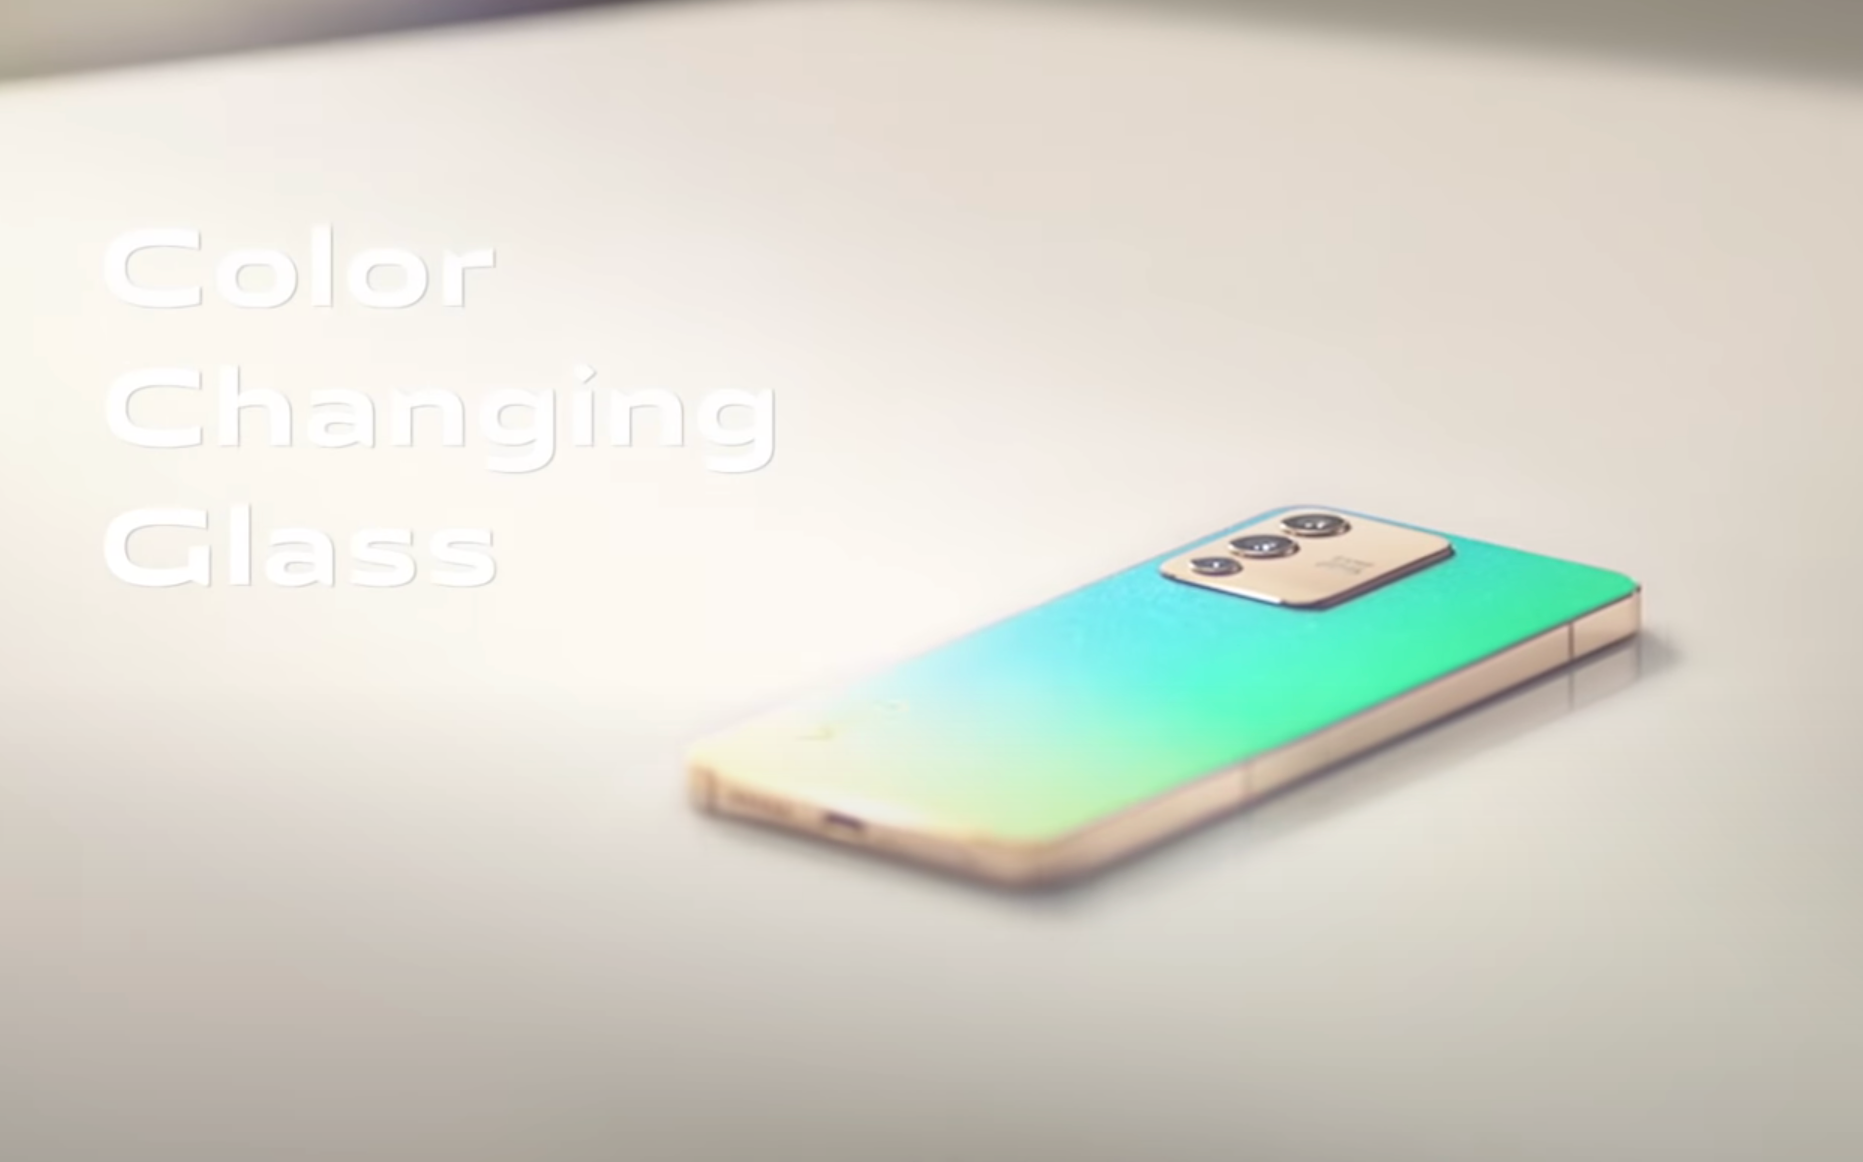 Este espectacular smartphone cambia de color su parte trasera